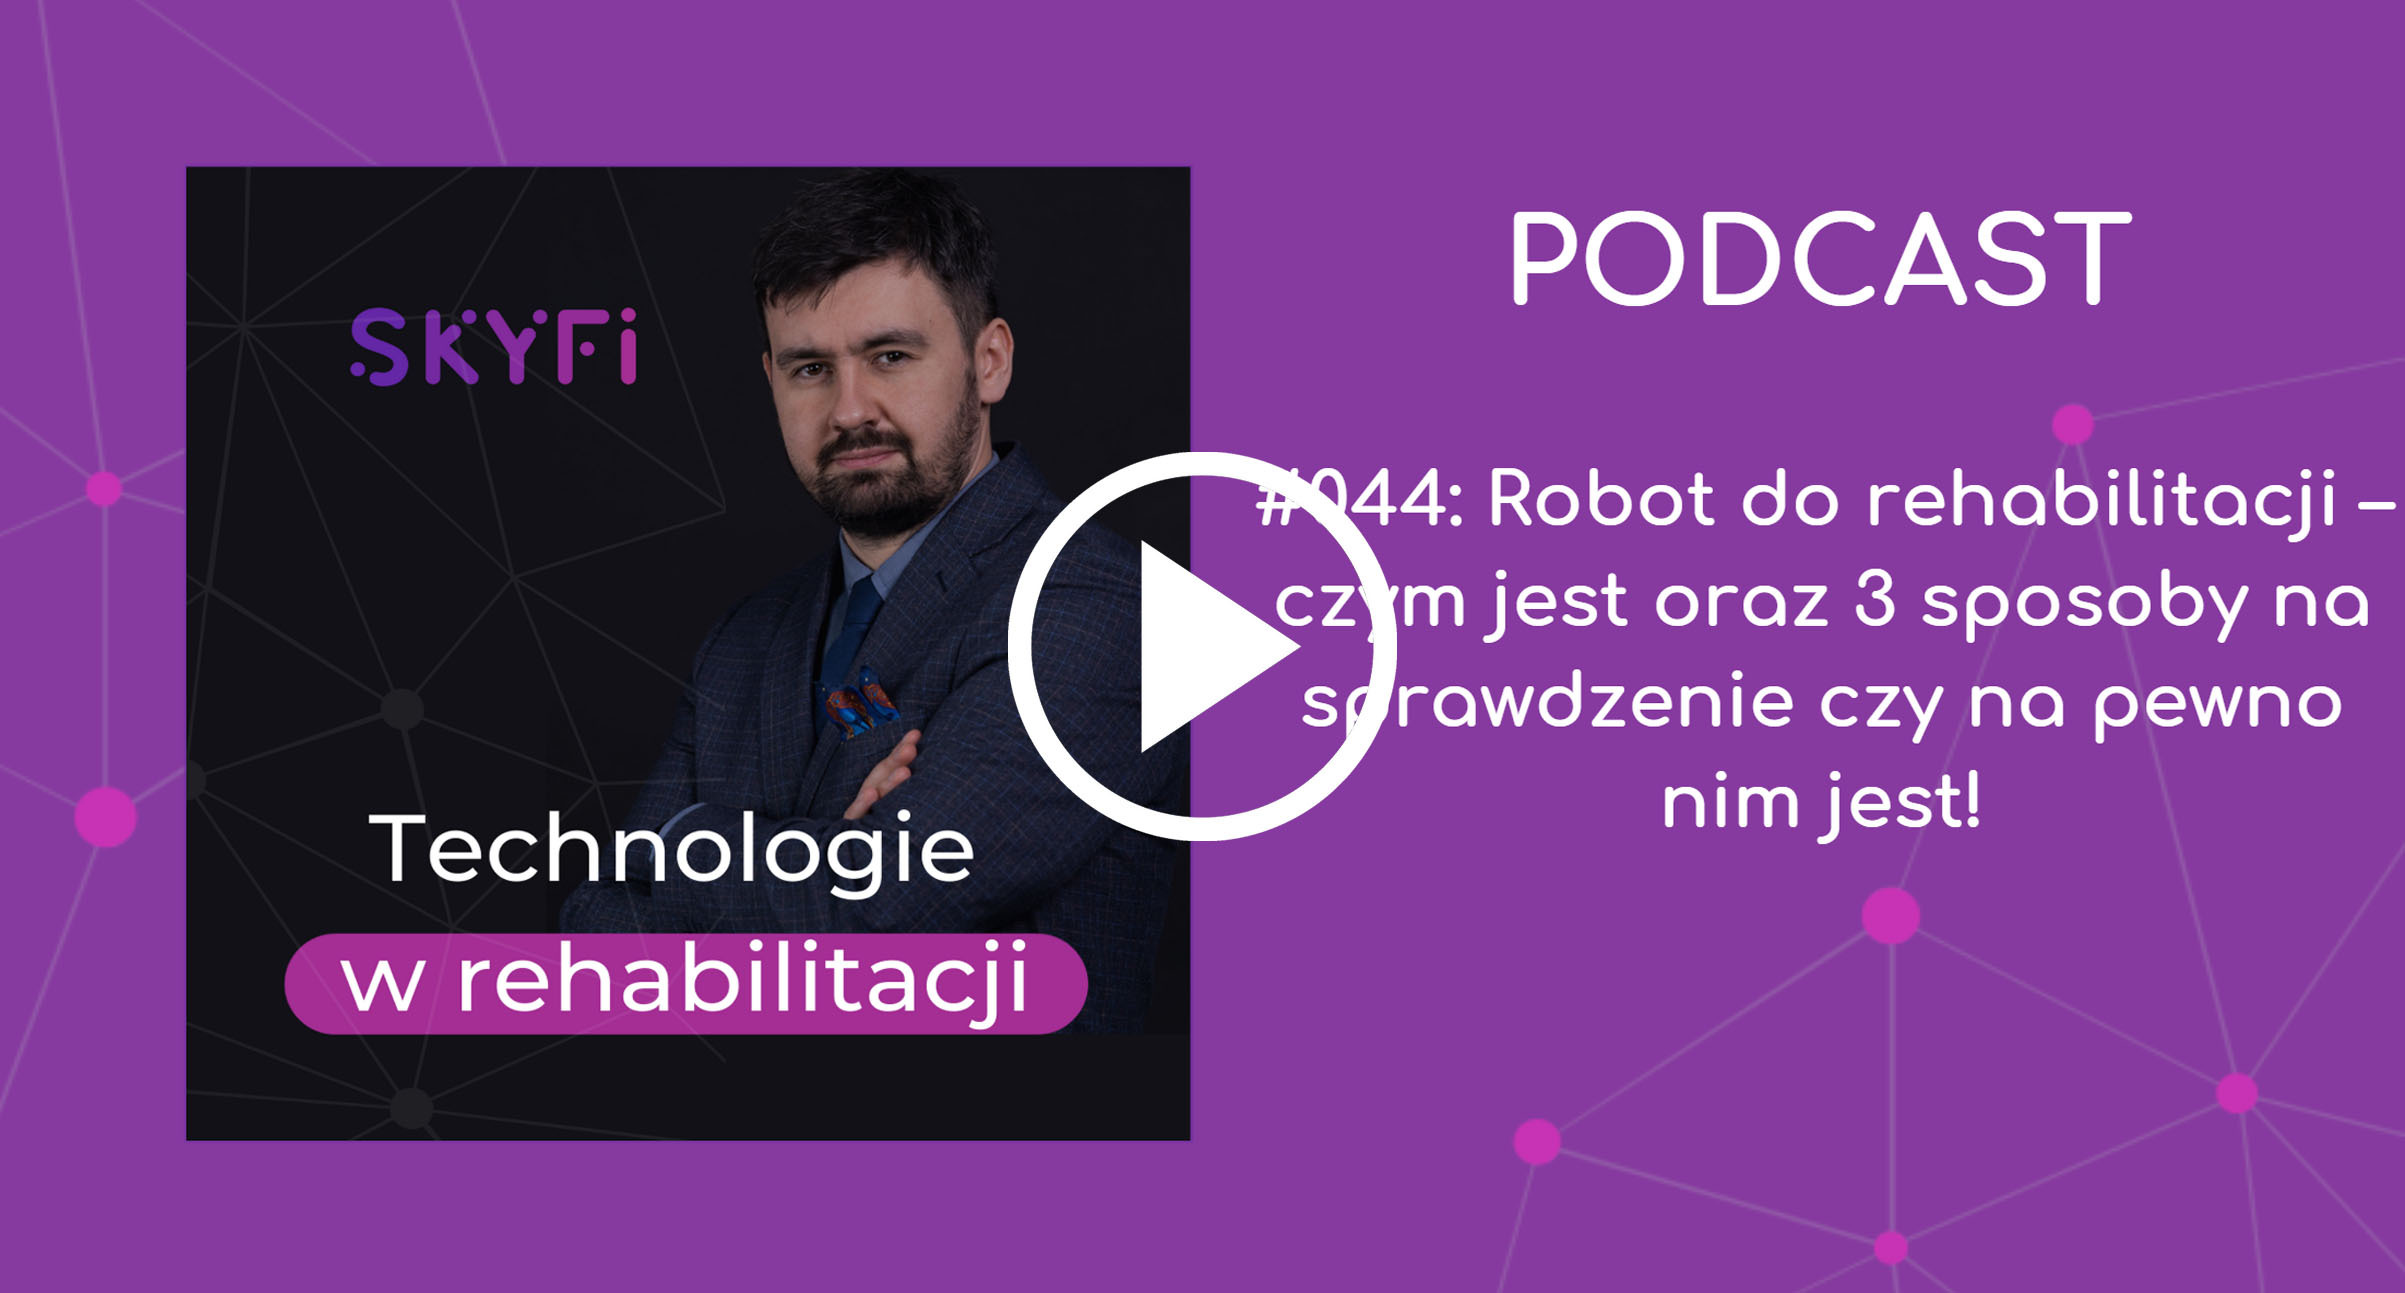 Podcast-44-robot-do-rehabilitacji-czym-jest-robotyka-roboty-rehabilitacyjne-urządzenia-robotyczne-sprzęt-robotyczny-Skyfi